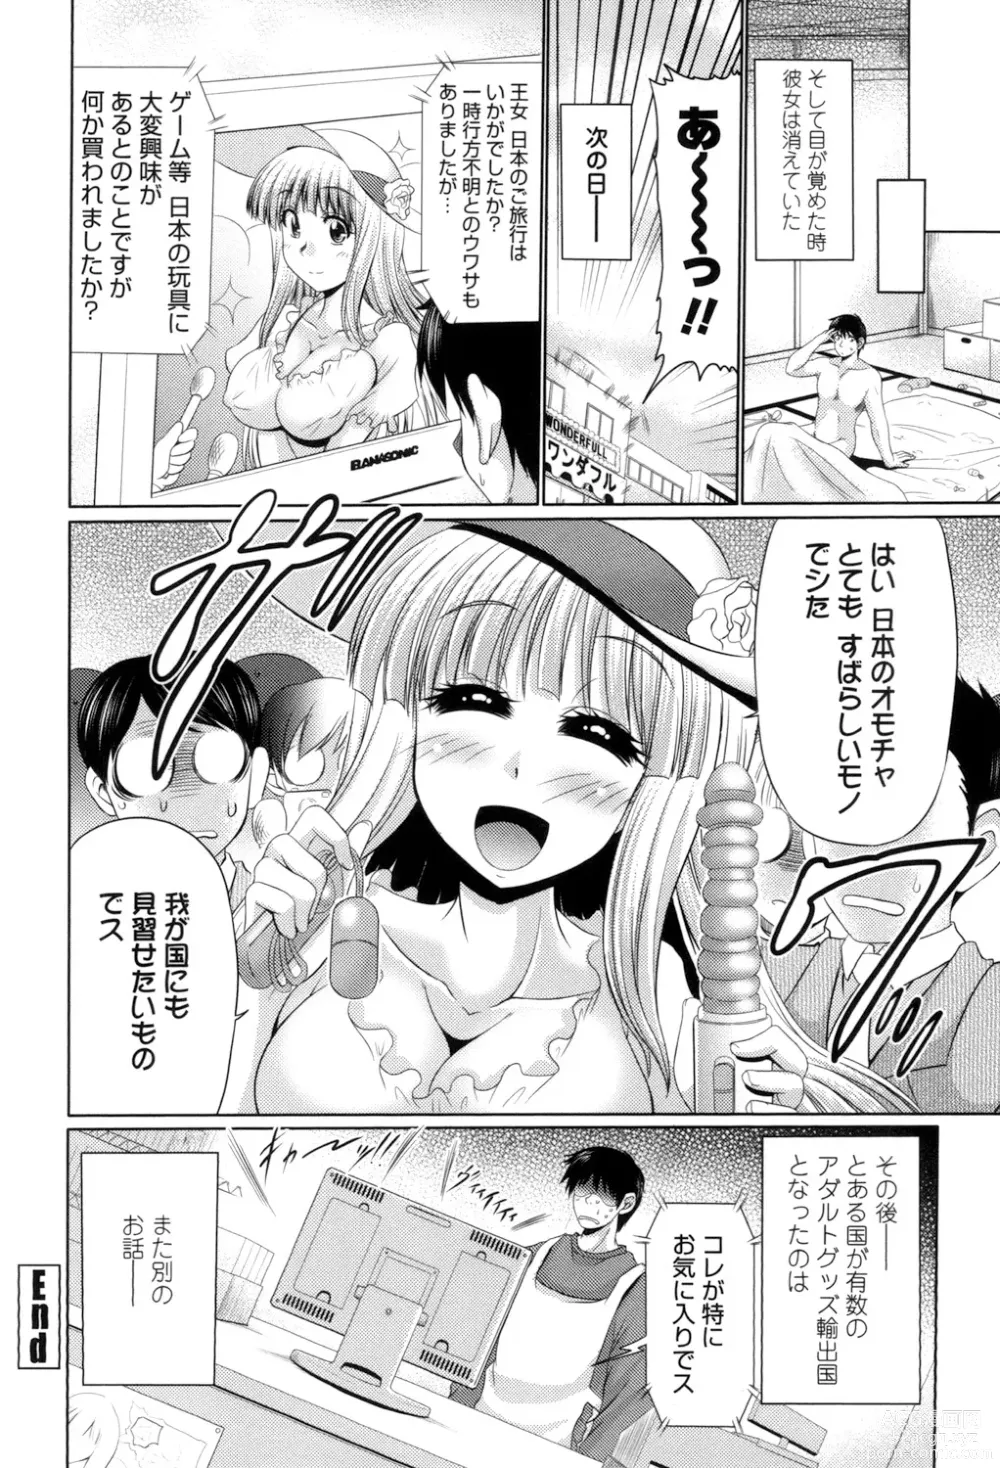 Page 190 of manga Class YoMaid